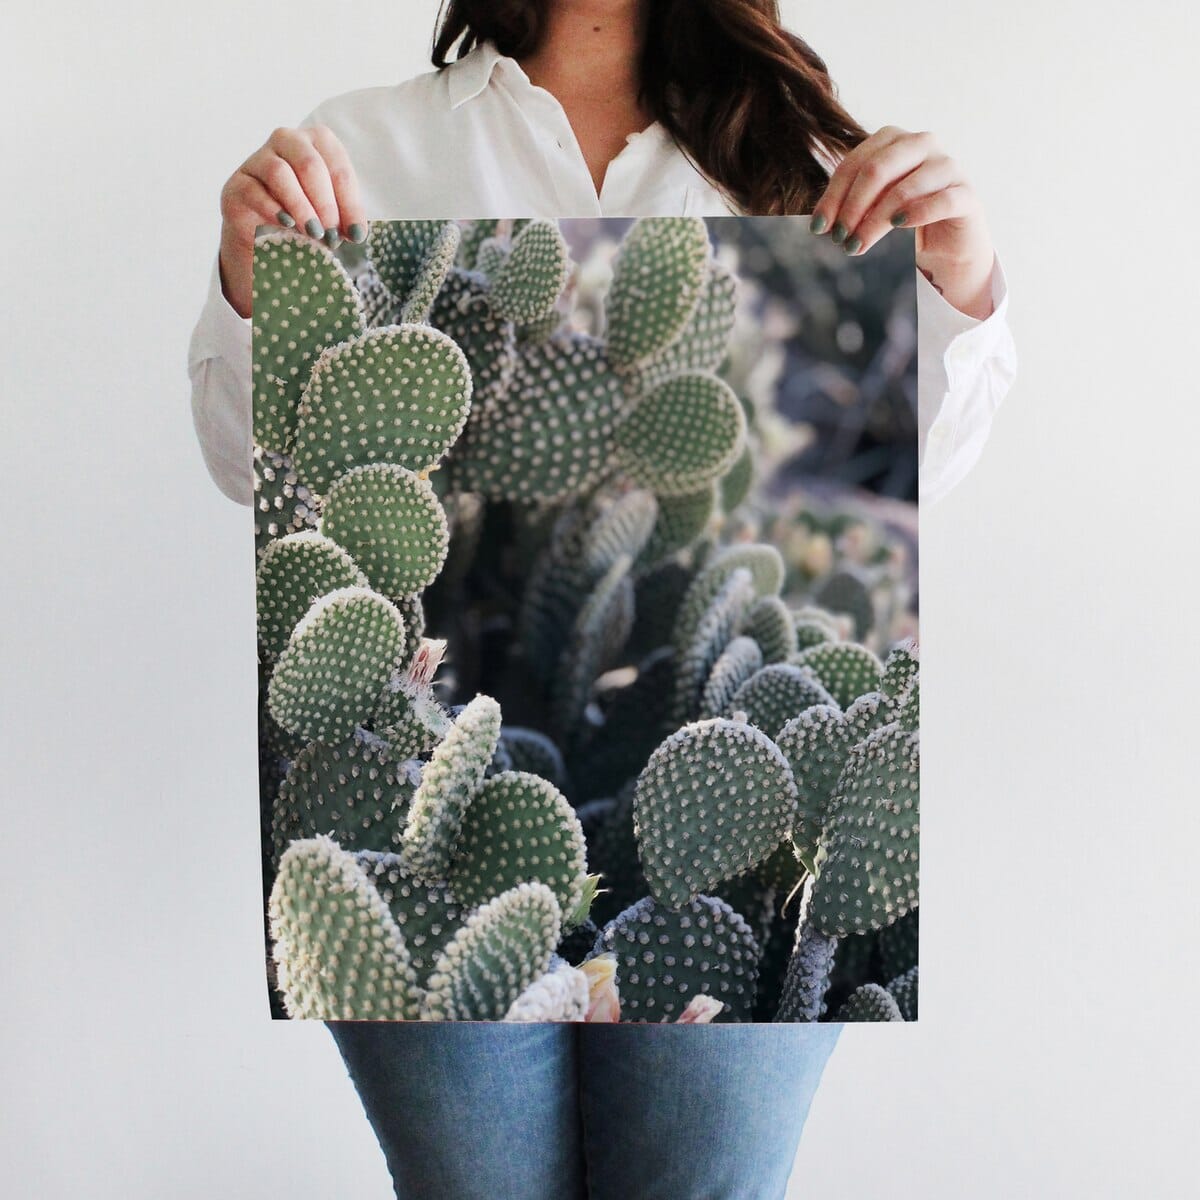 Cali Cactus Art Print Prints Urbanwalls 